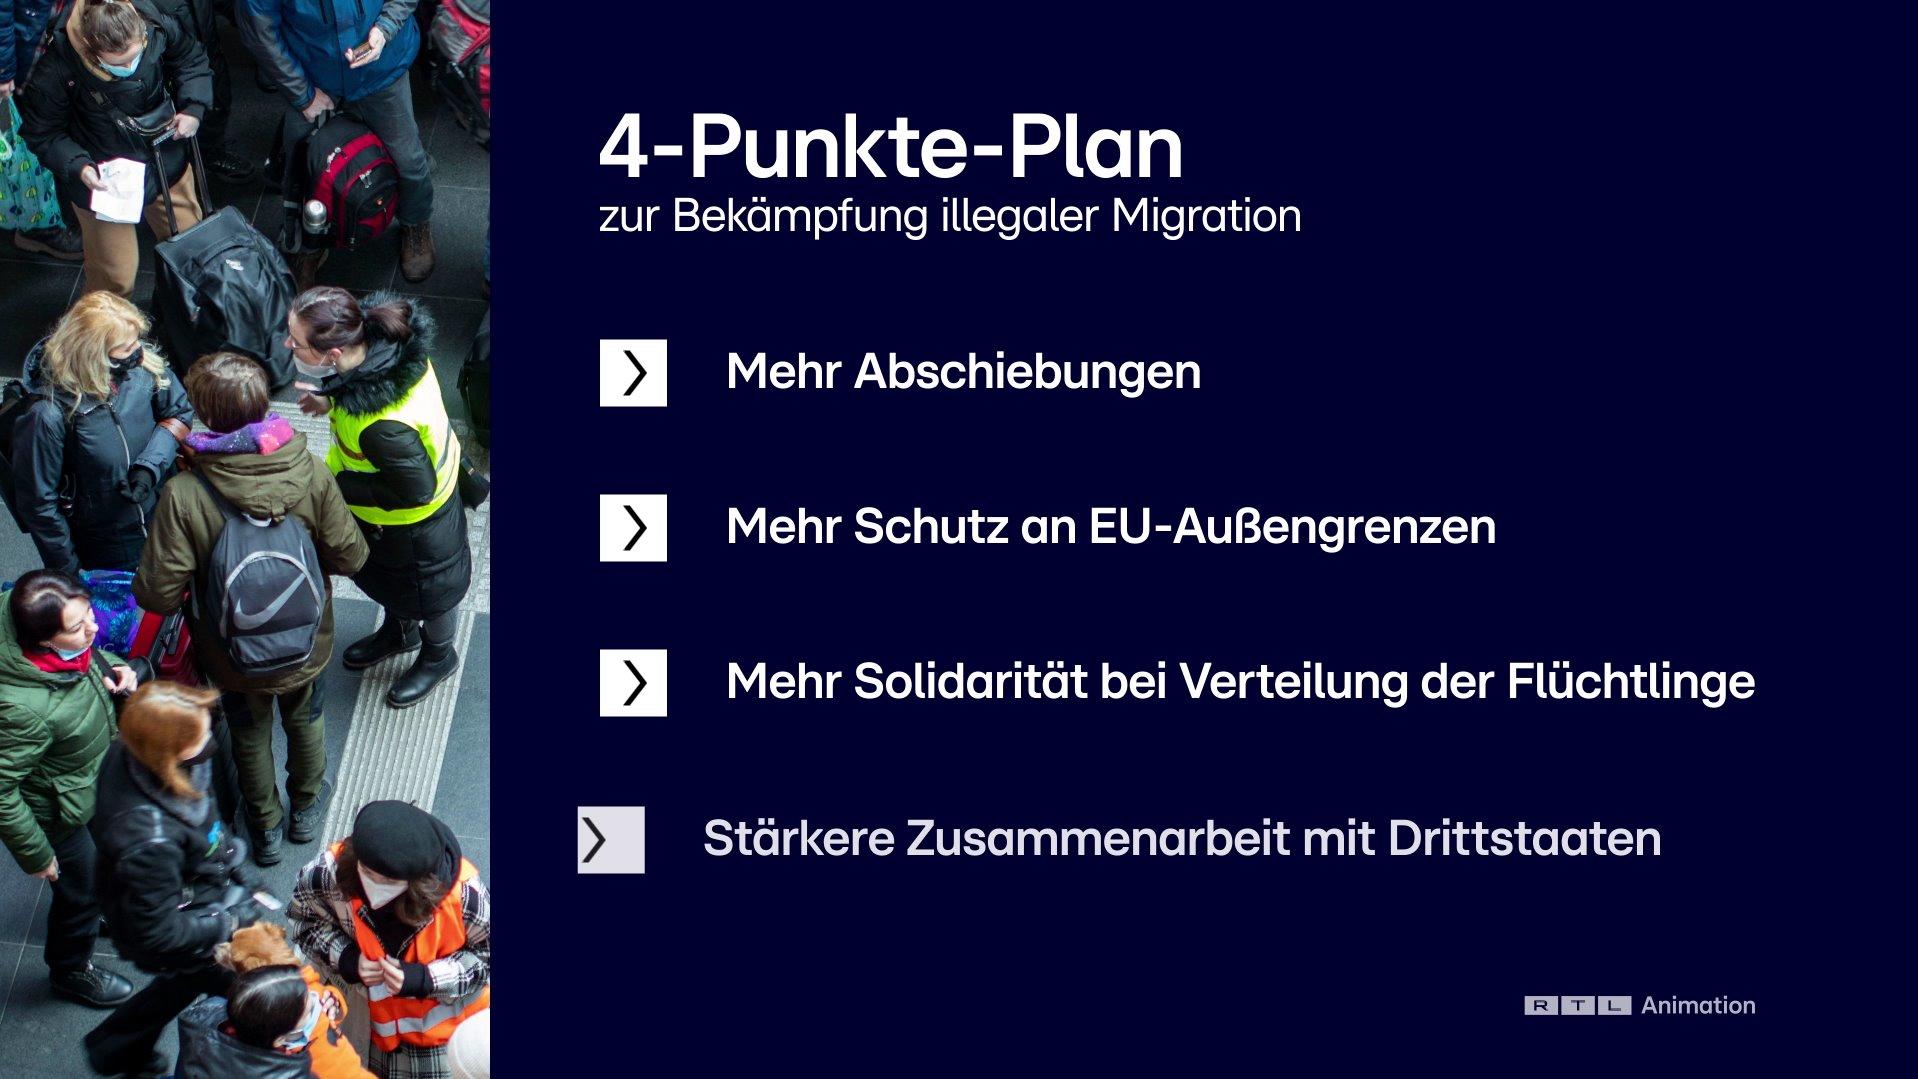 Ein Vier-Punkte-Plan der EU zum Thema Migration